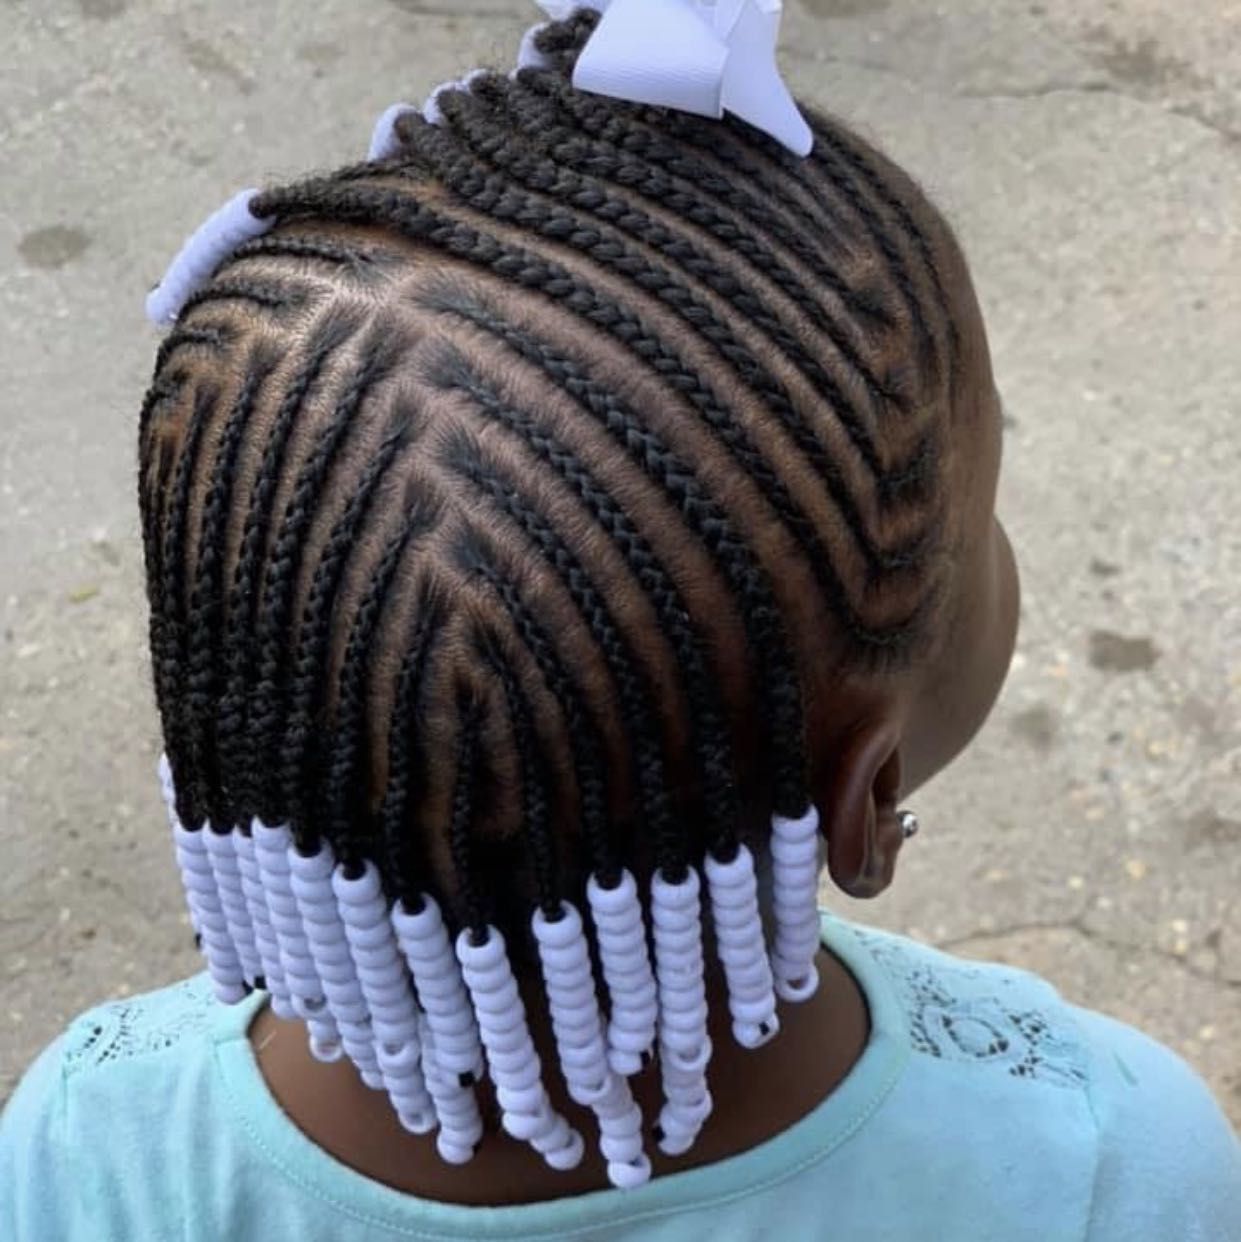 Lil girls natural braids (no weave added) portfolio